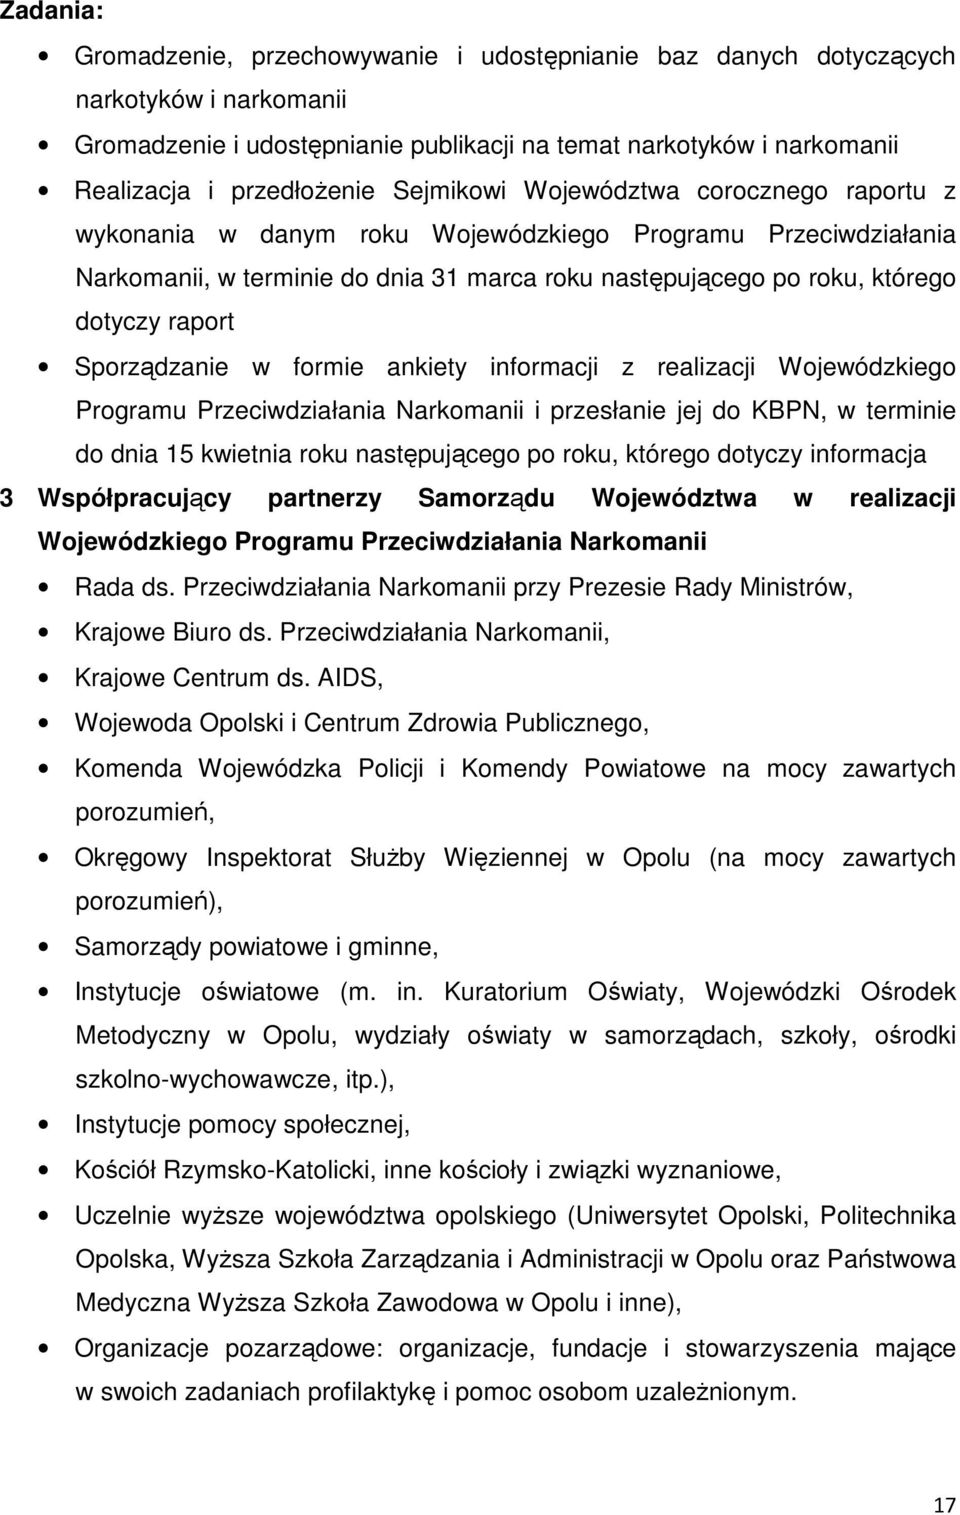 Sporządzanie w formie ankiety informacji z realizacji Wojewódzkiego Programu Przeciwdziałania Narkomanii i przesłanie jej do KBPN, w terminie do dnia 15 kwietnia roku następującego po roku, którego